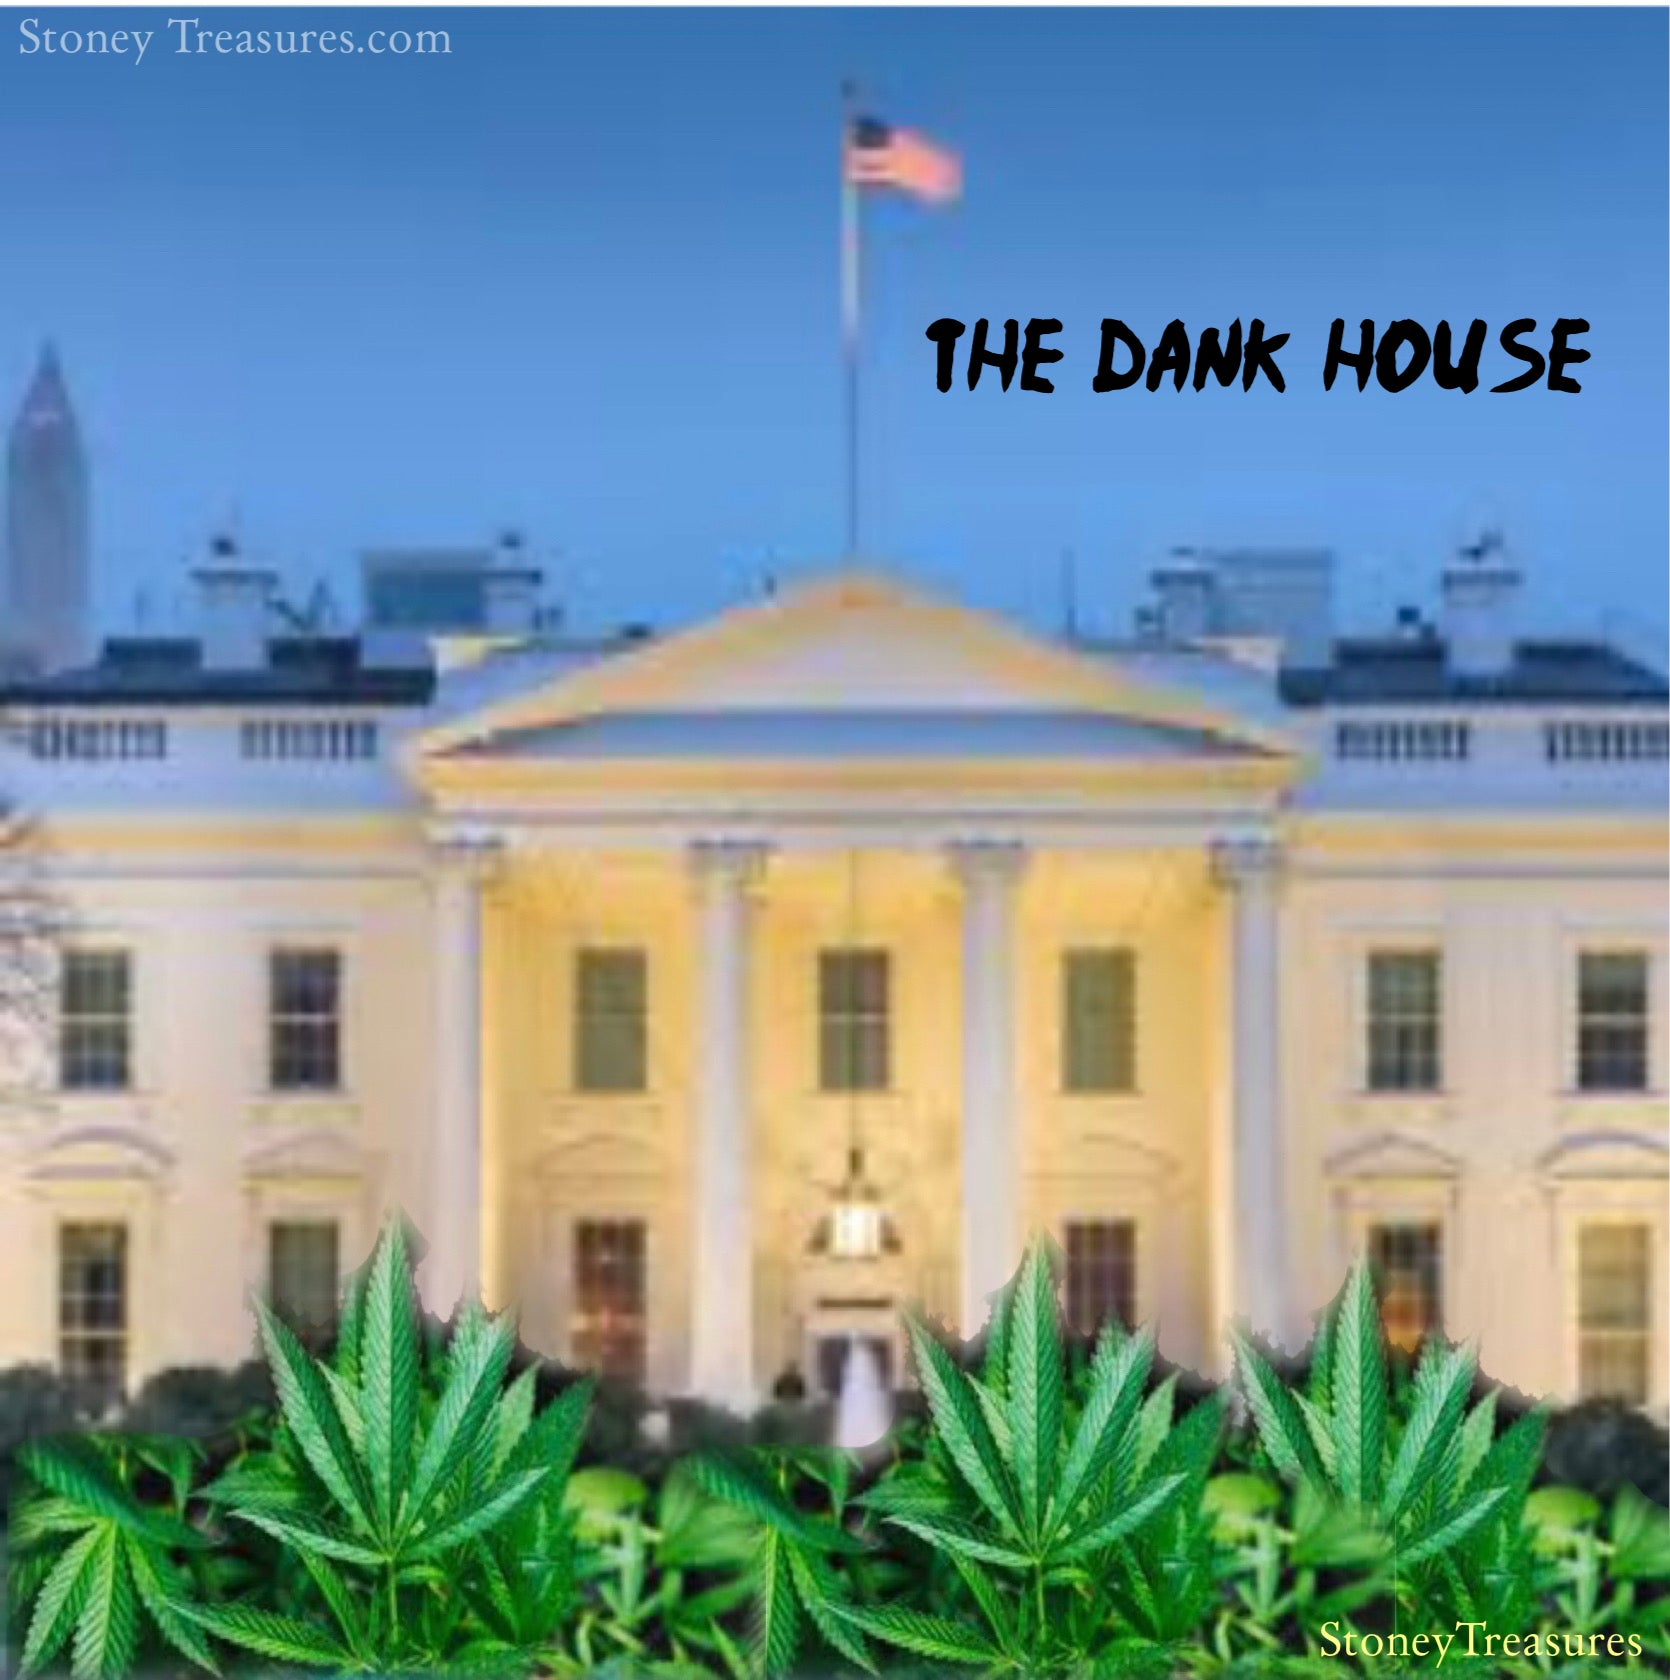 The Dank House